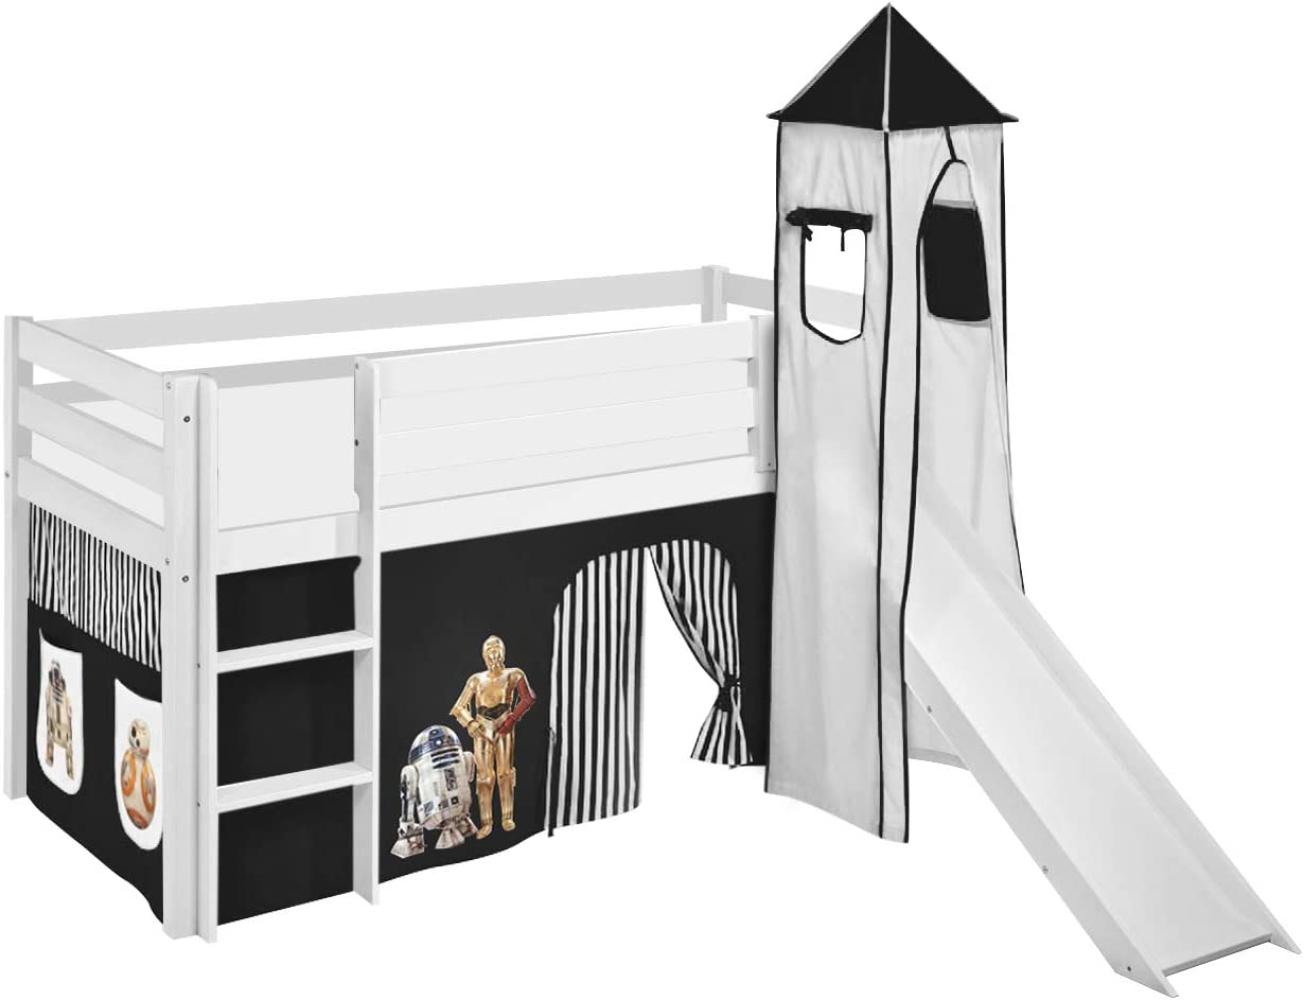 Lilokids 'Jelle' Spielbett 90 x 200 cm, Star Wars Schwarz, Kiefer massiv, mit Turm, Rutsche und Vorhang Bild 1